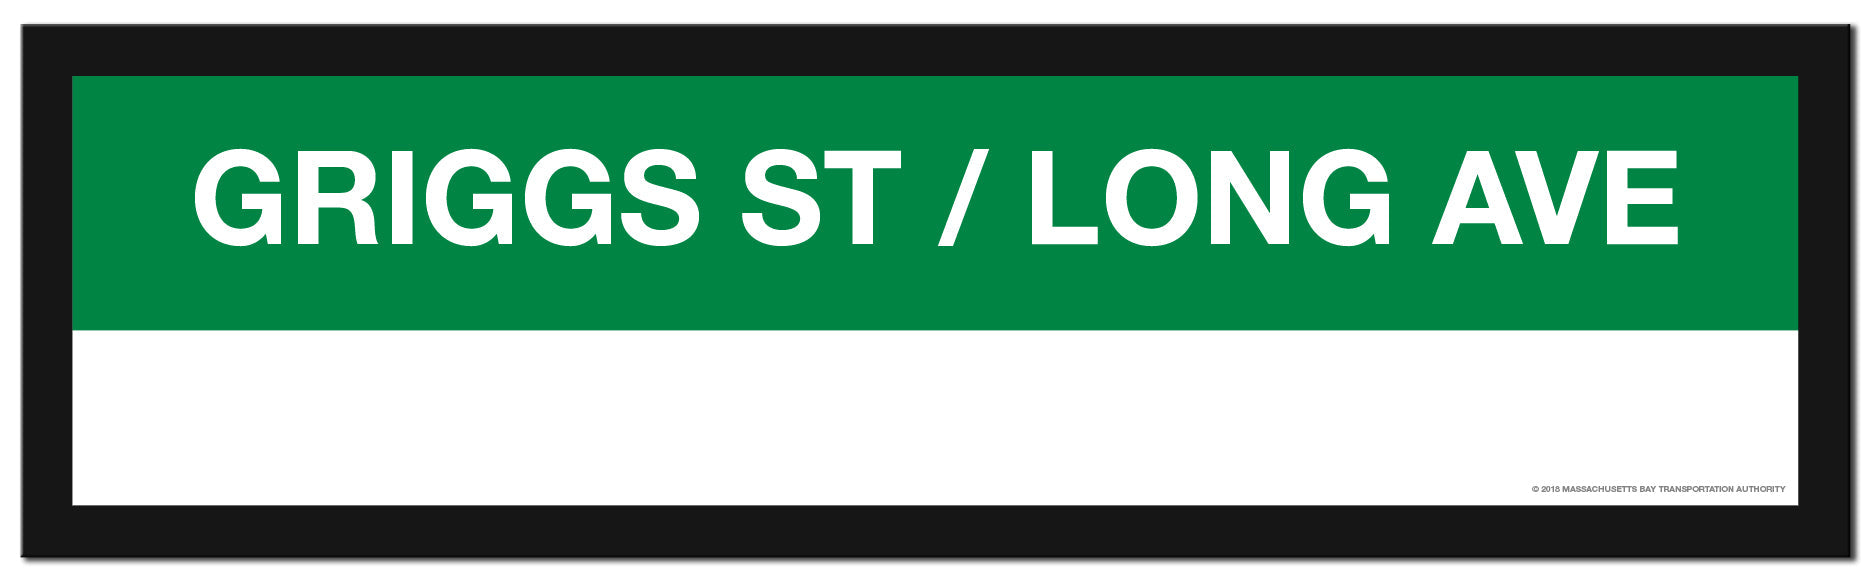 Framed MBTA GREEN LINE Station Signs